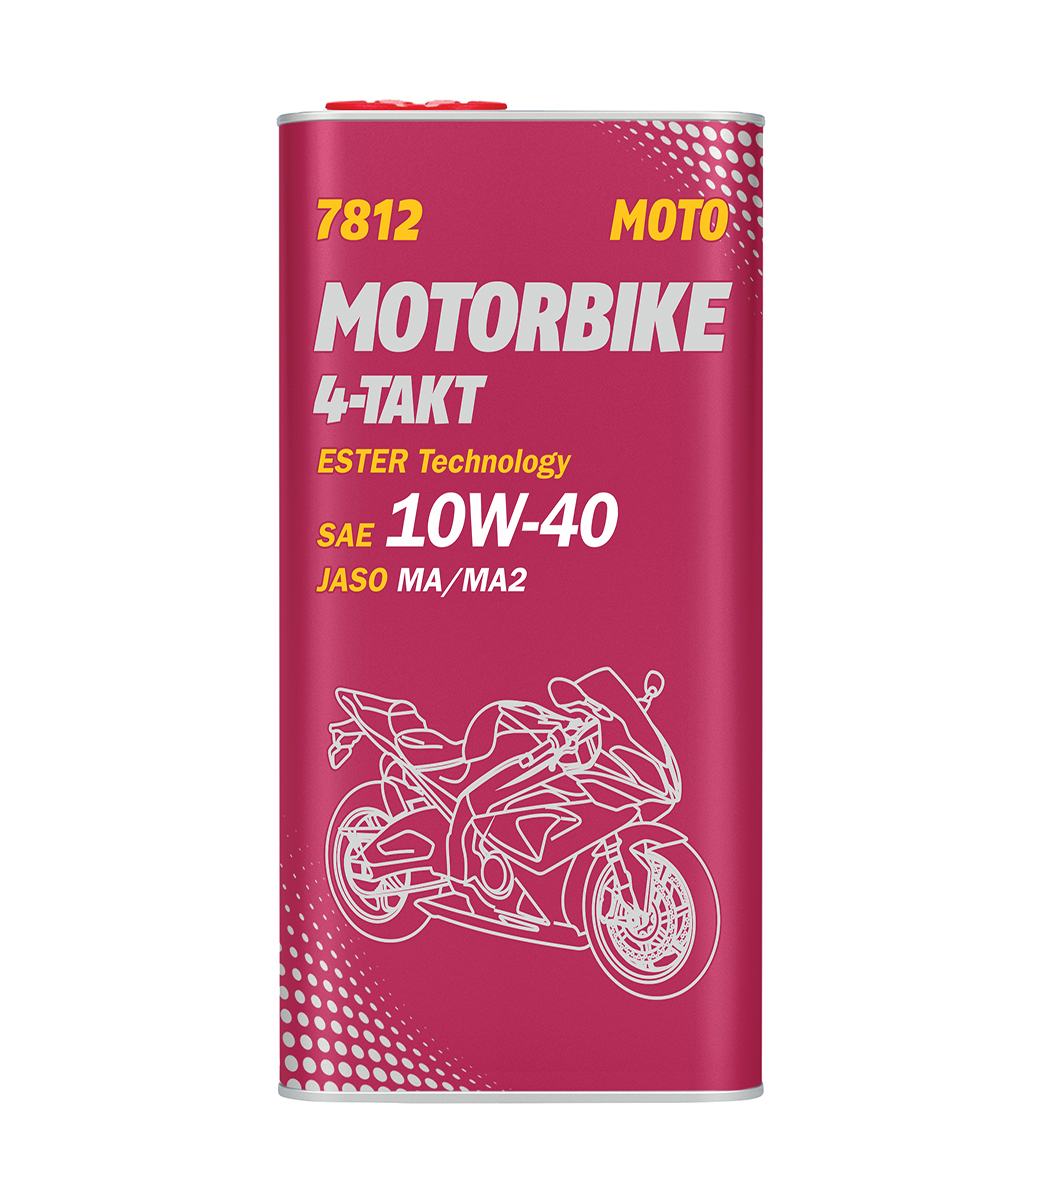 Motorbike 4-Takt 10W-40